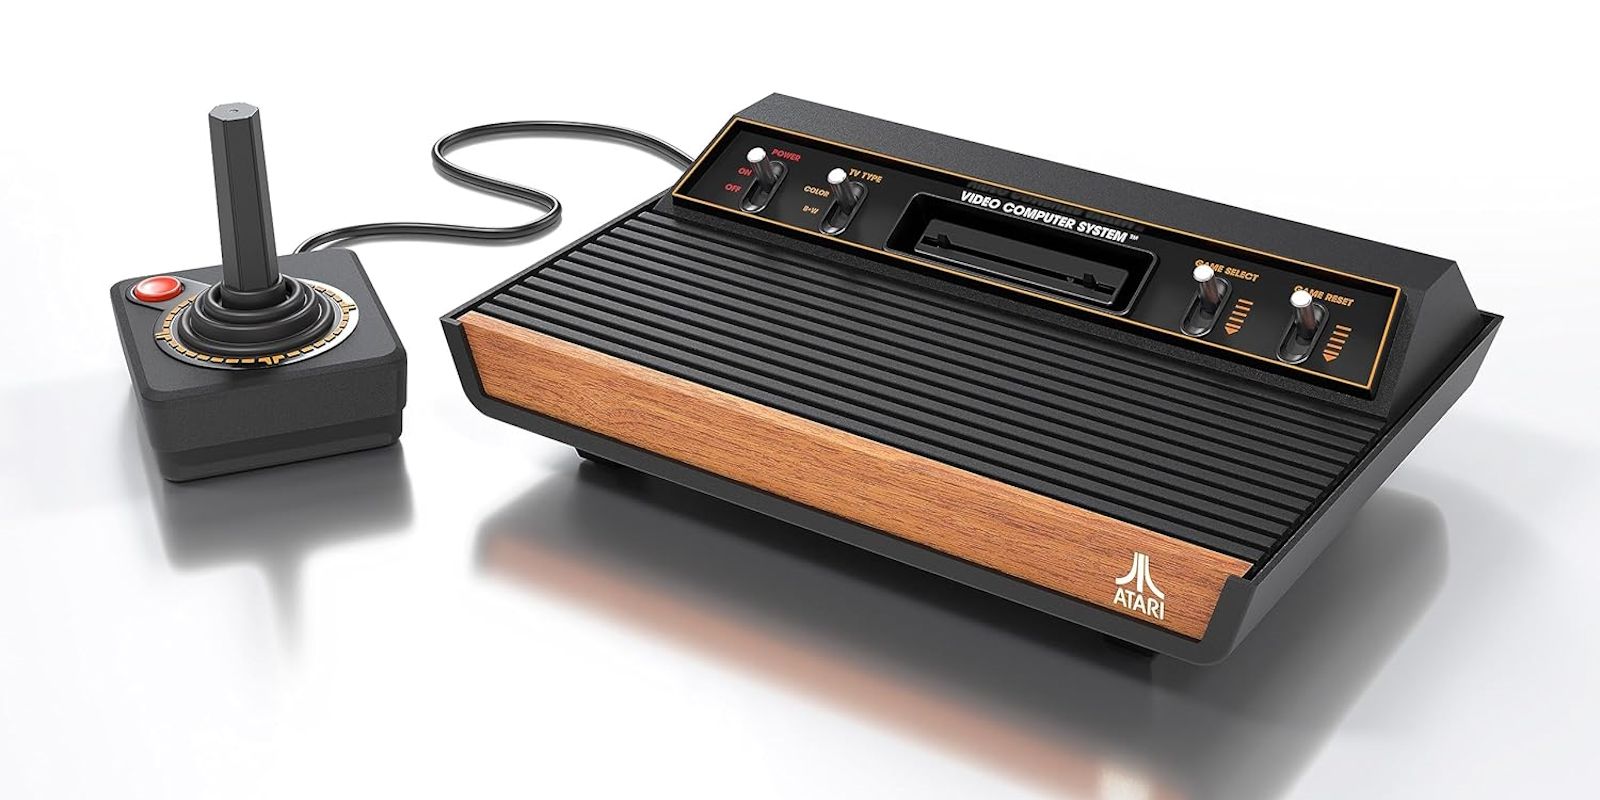 “Una máquina bellamente diseñada”” Revisión de Atari 2600+